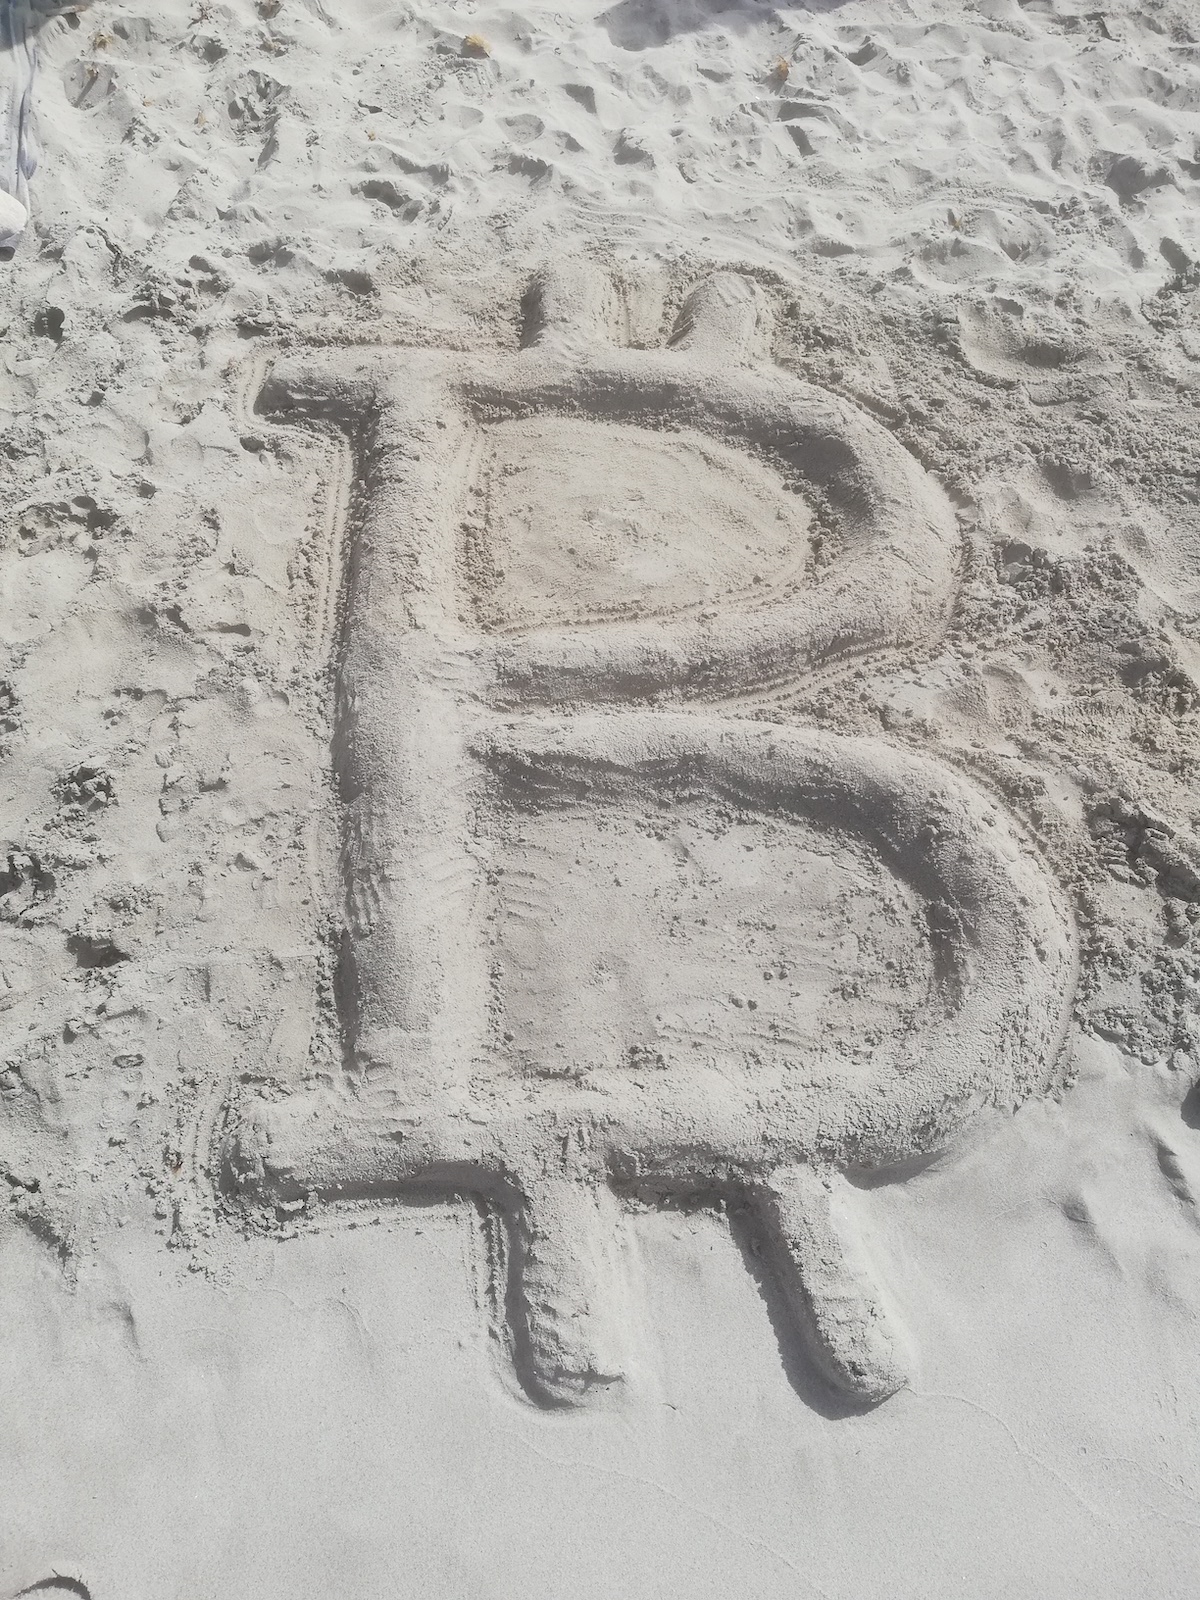 Bitcoin sand castle